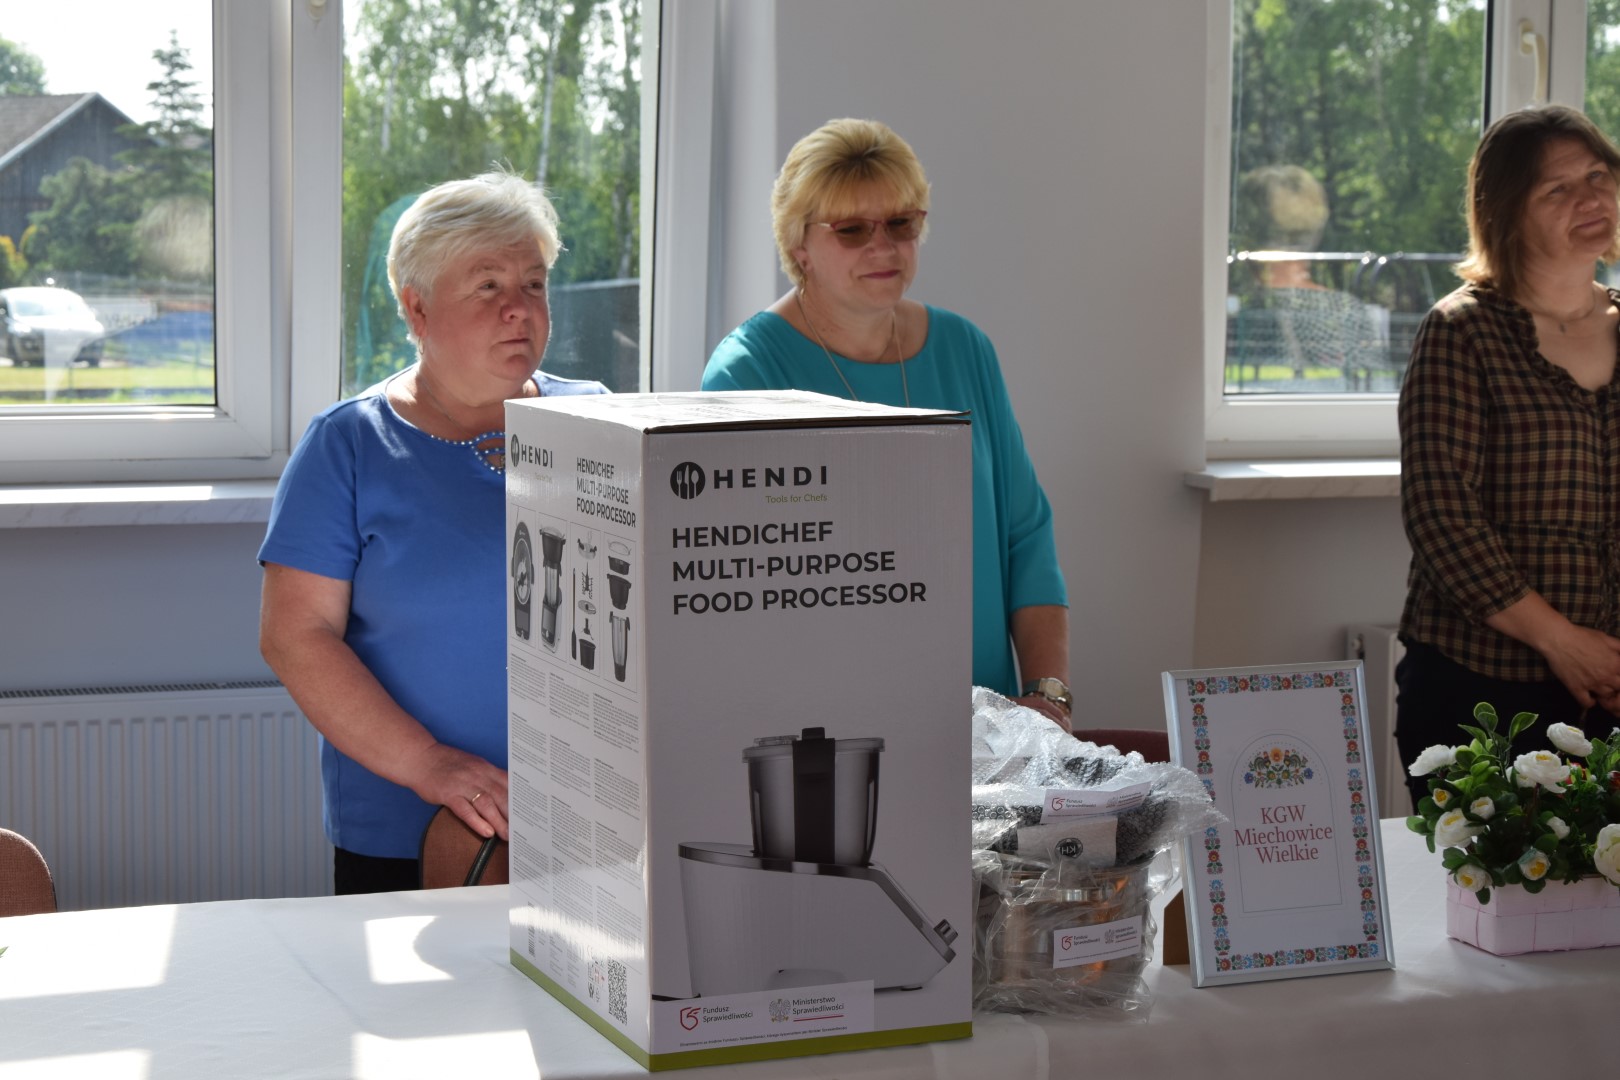 zdjęcie przedstawia trzy kobiety w wieku od 50 do 60 lat stojące za stołem, na stole znajdują się sprzęt i akcesoria kuchenne.